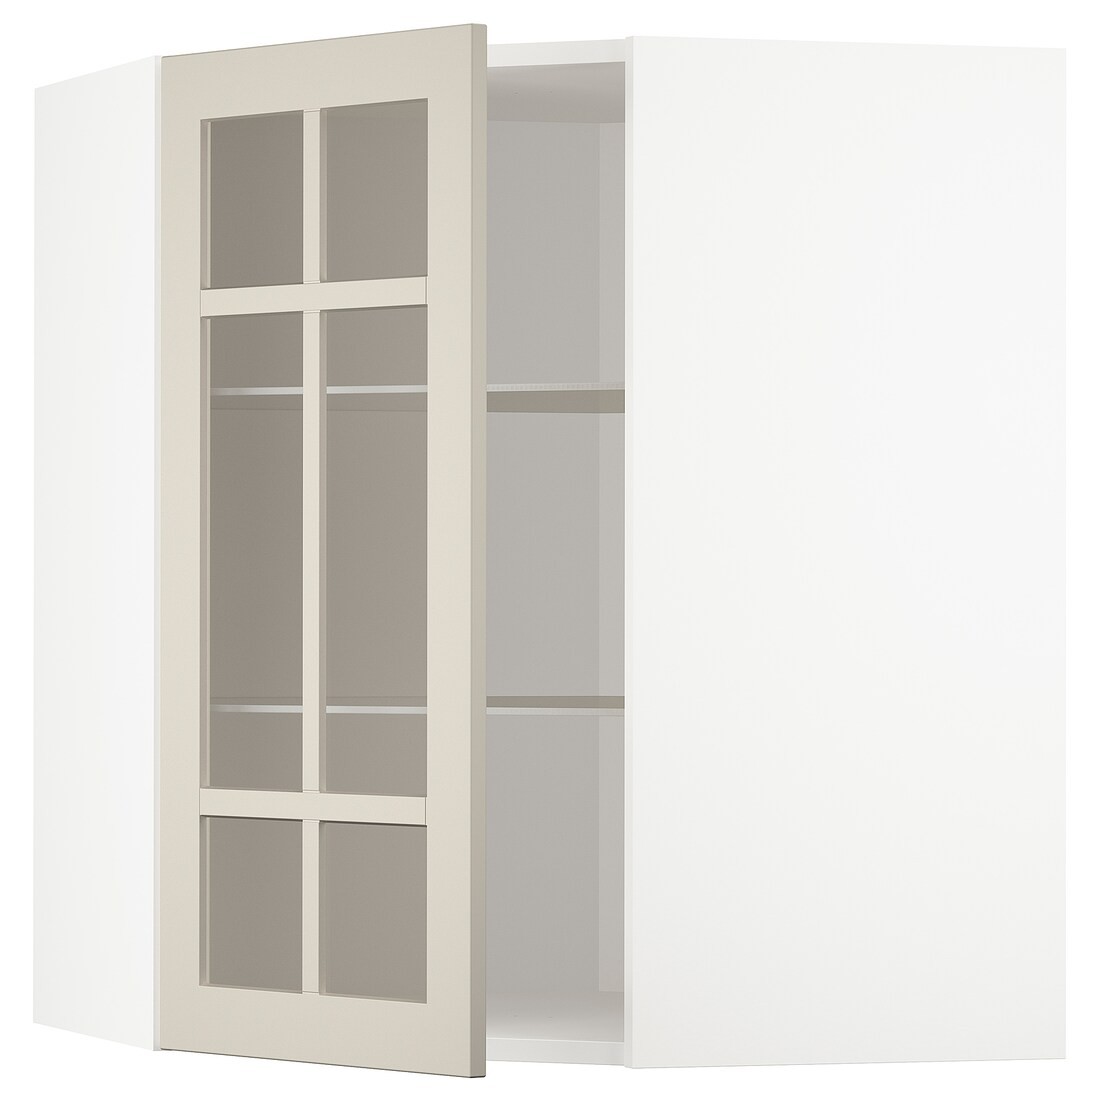 METOD МЕТОД Кутова настінна шафа з полицями / скляні двері, білий / Stensund бежевий, 68x80 см